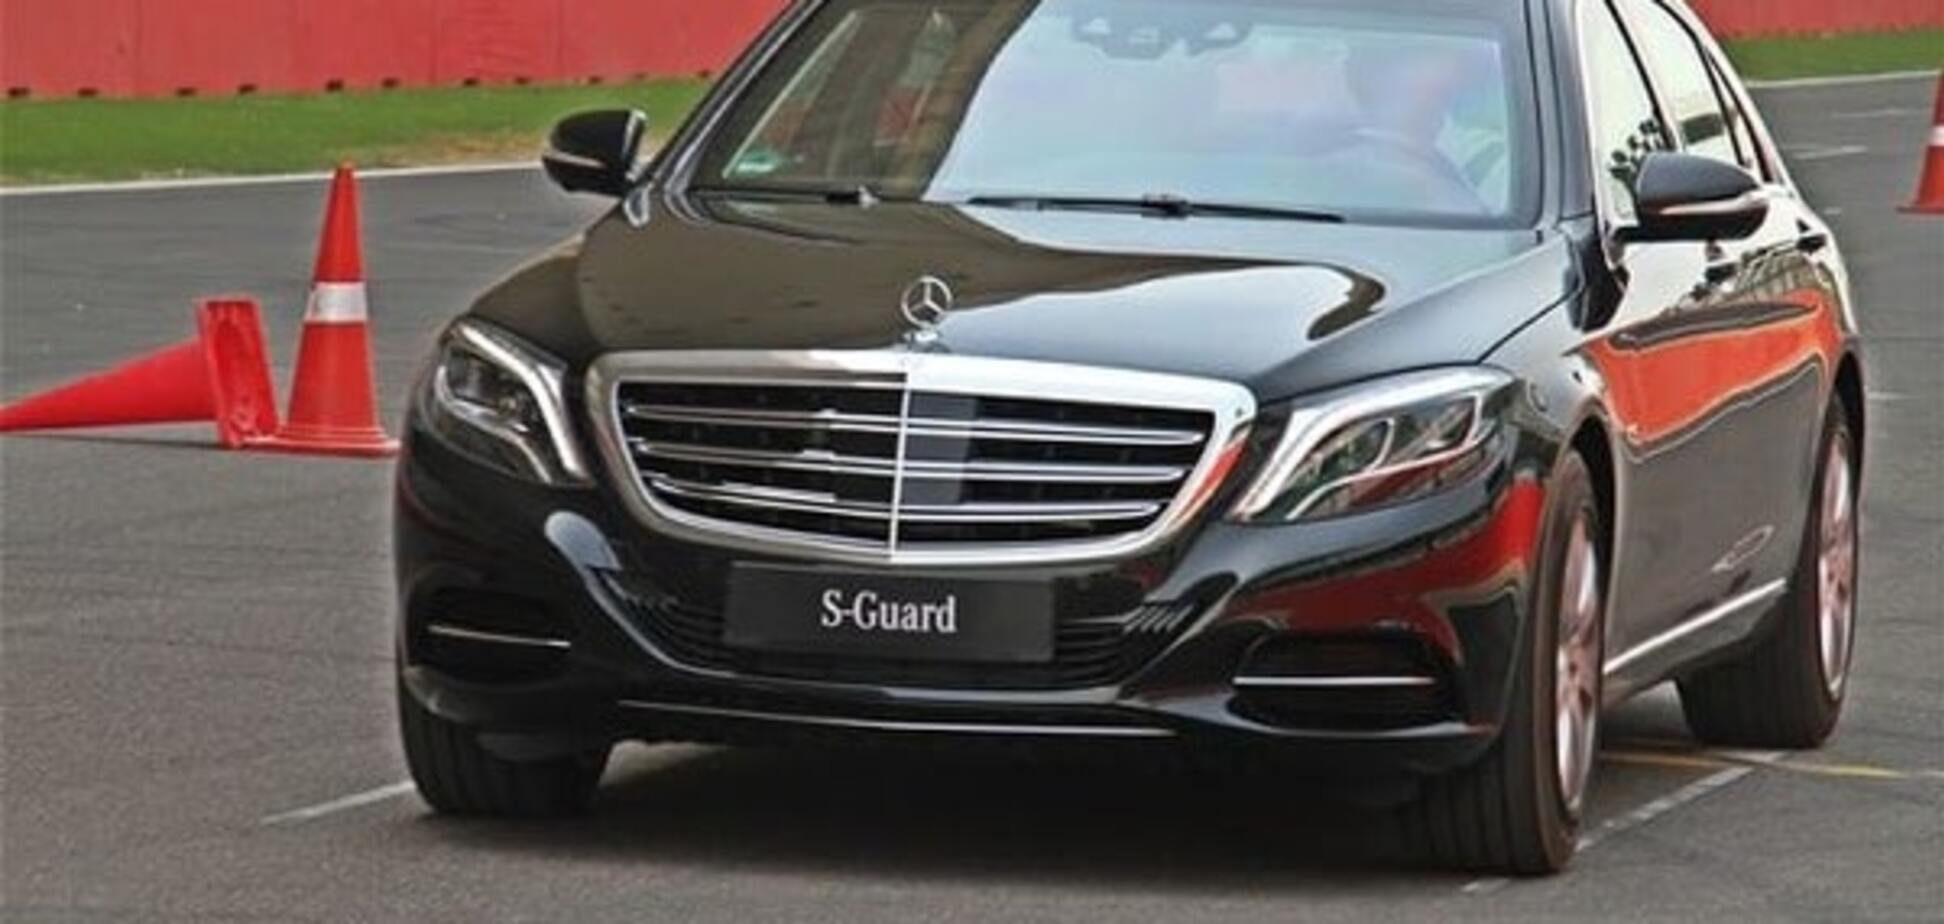 Mercedes s600 guard